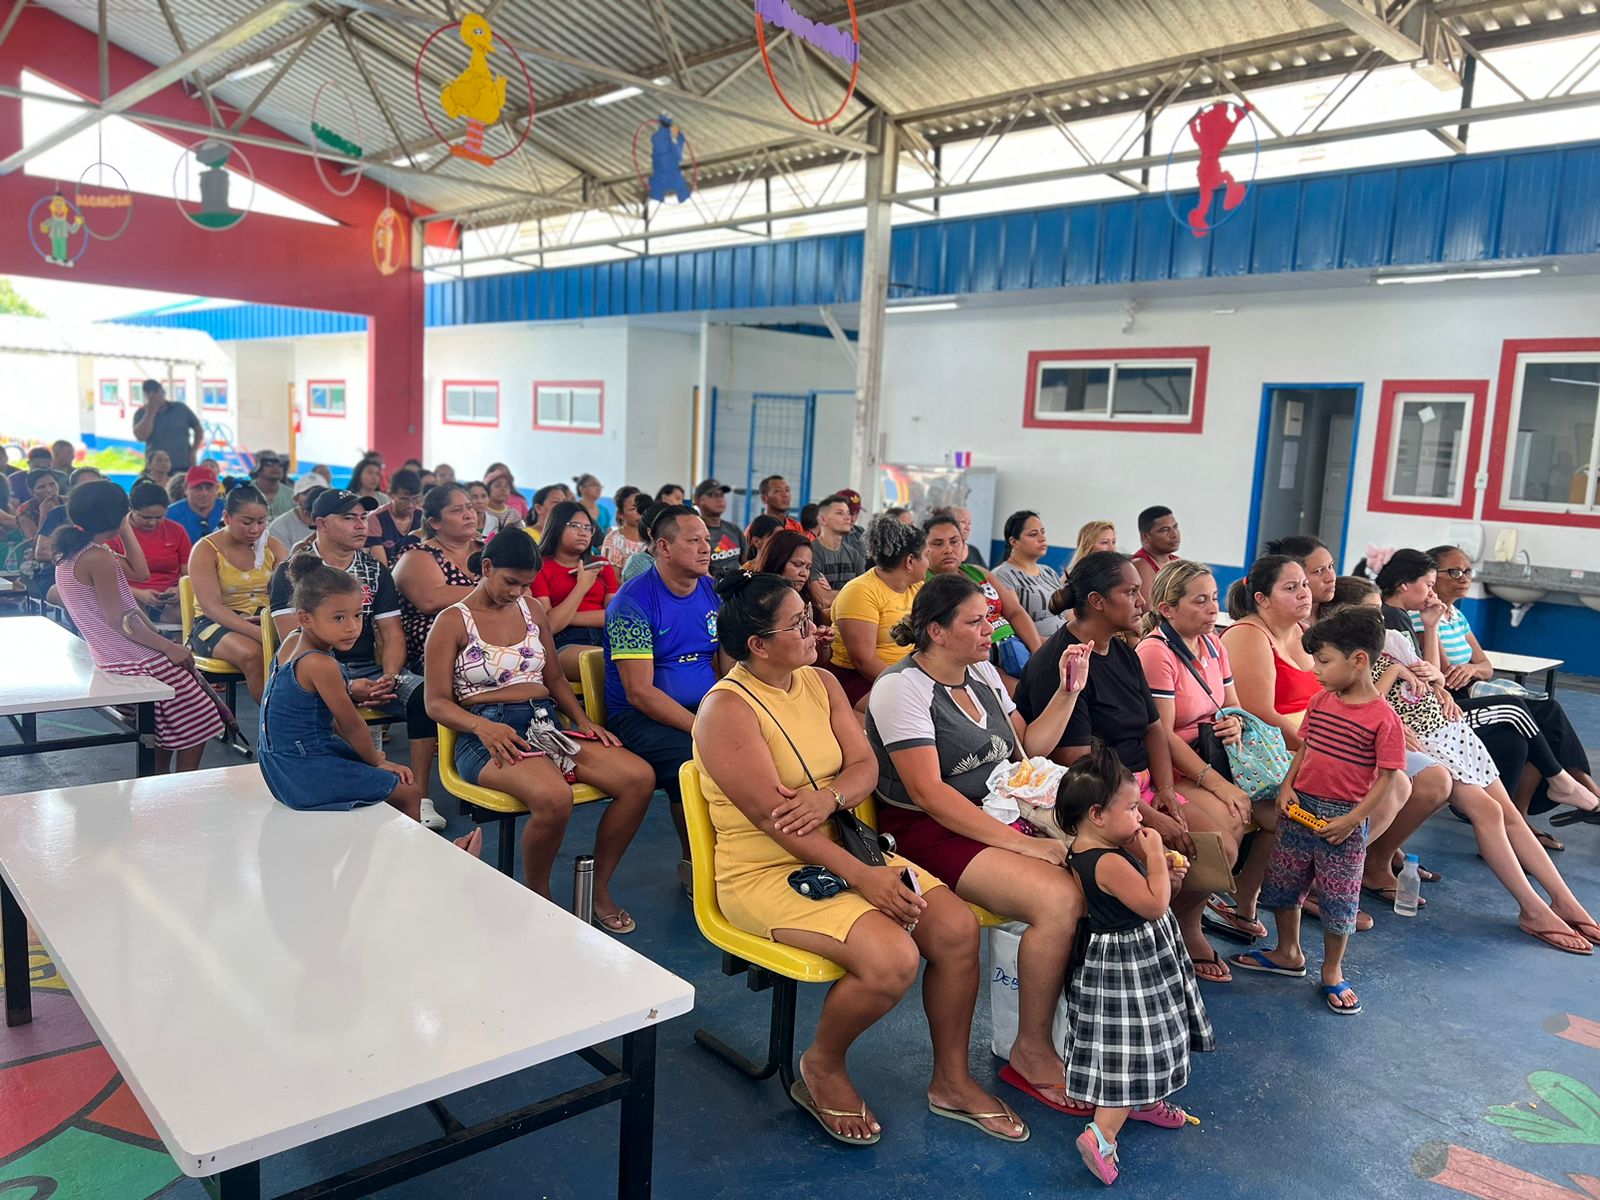 Cadastramento para regularização fundiária em comunidades das zonas Leste e Norte é iniciado pela Prefeitura de Manaus/ Foto – Divulgação / Semhaf